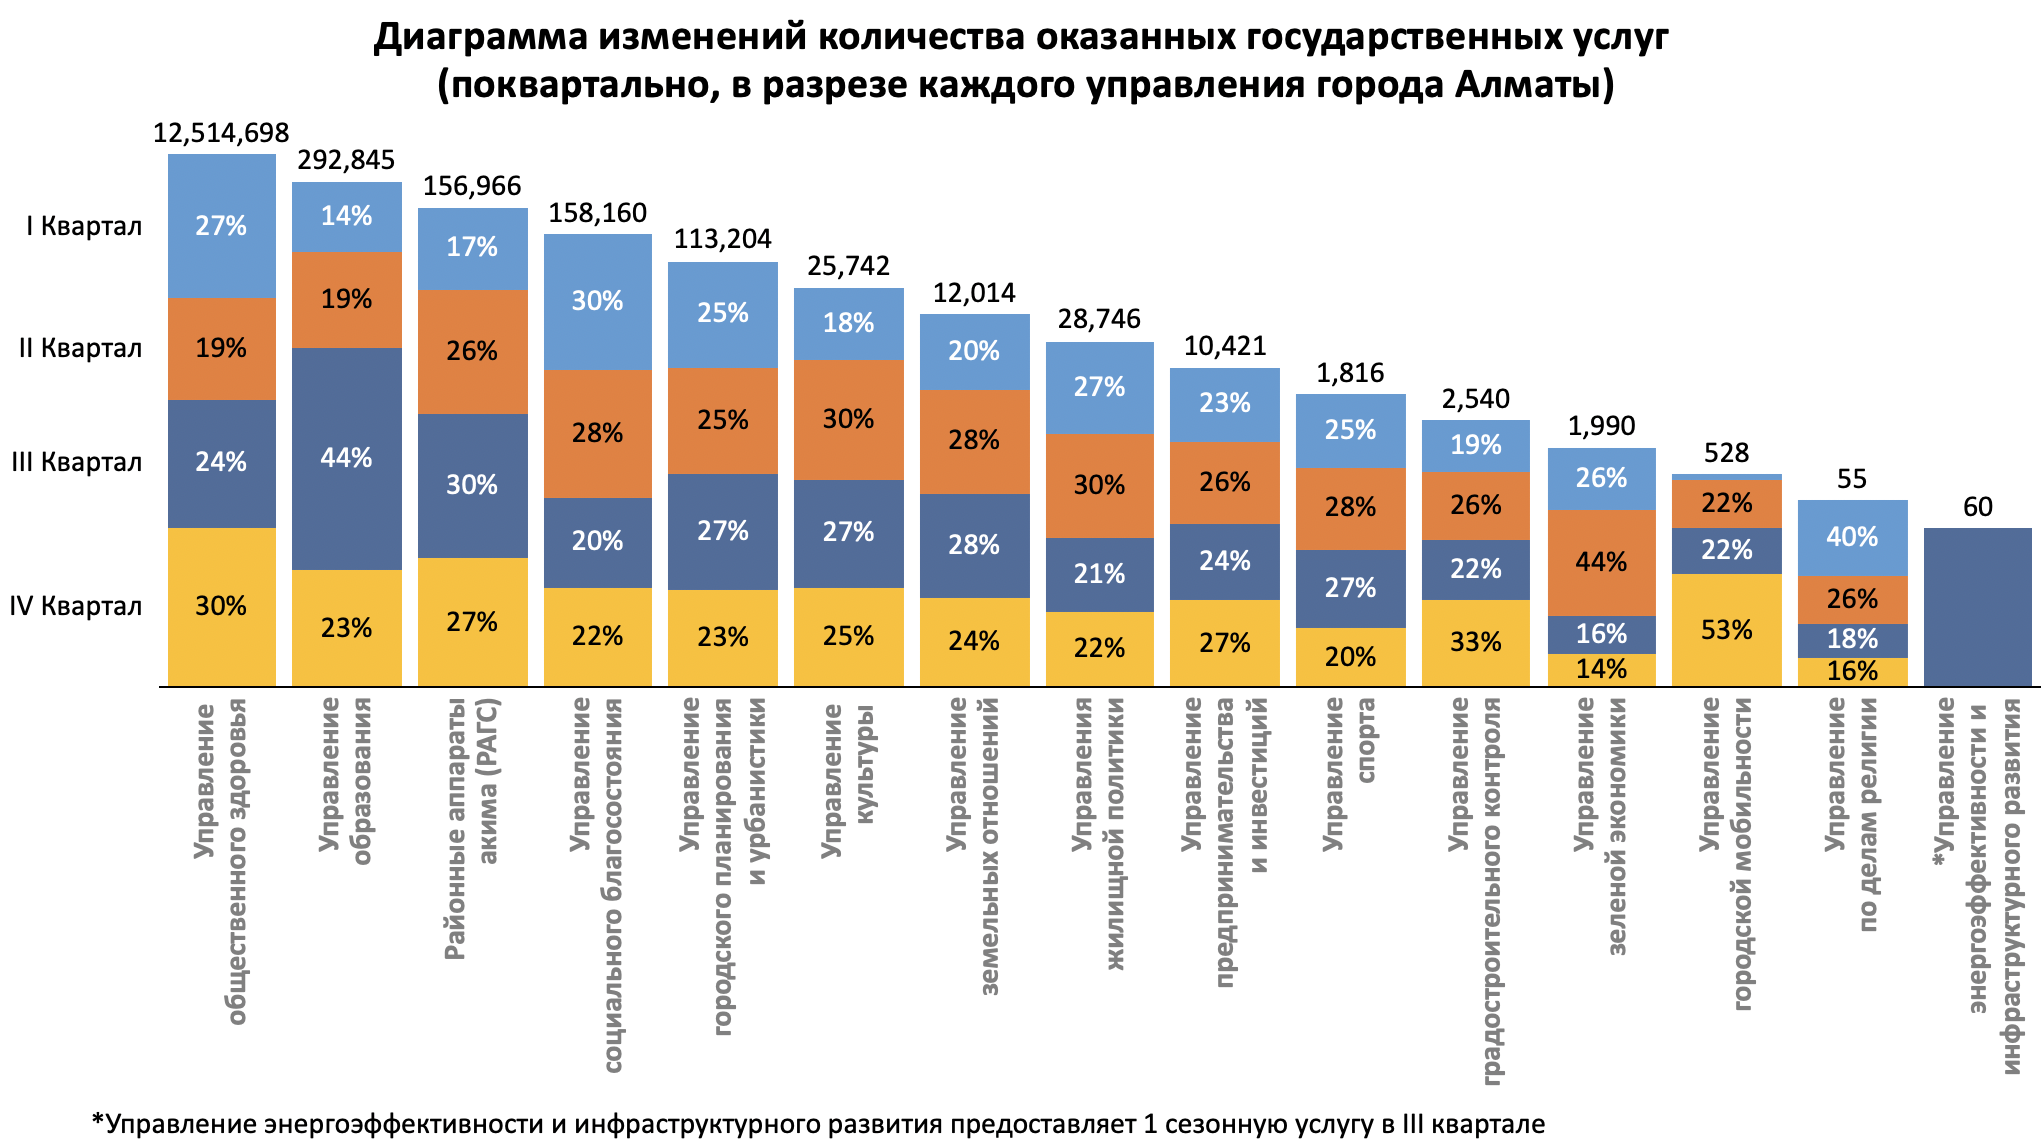 Отчет Управления цифровизации города Алматы об оказанных государственных услугах в 2021 году